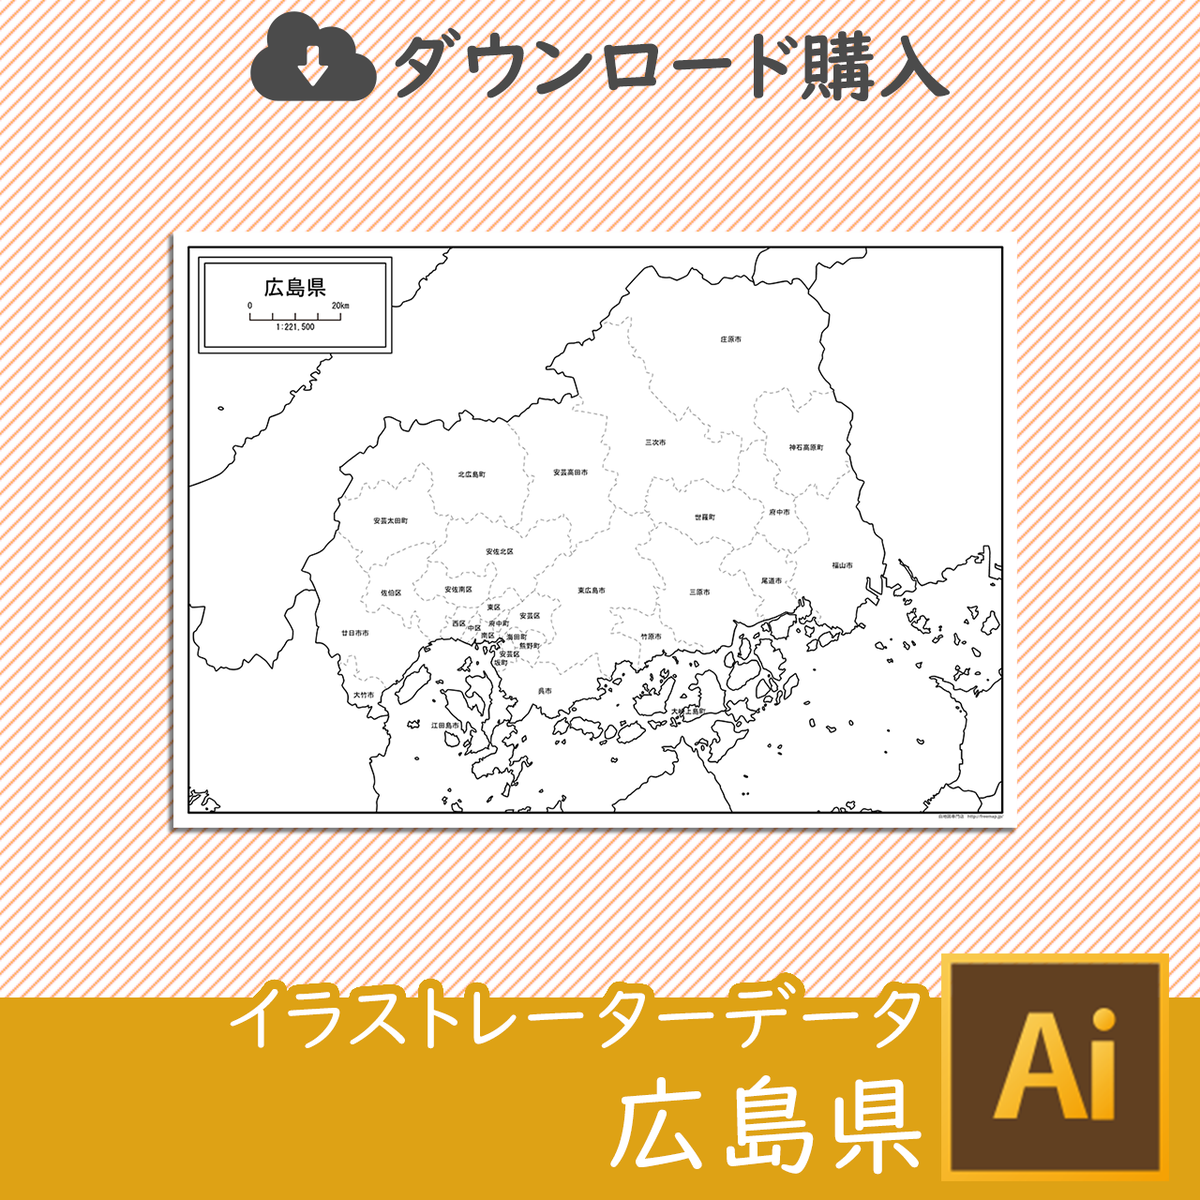 広島県の白地図データ 白地図専門店